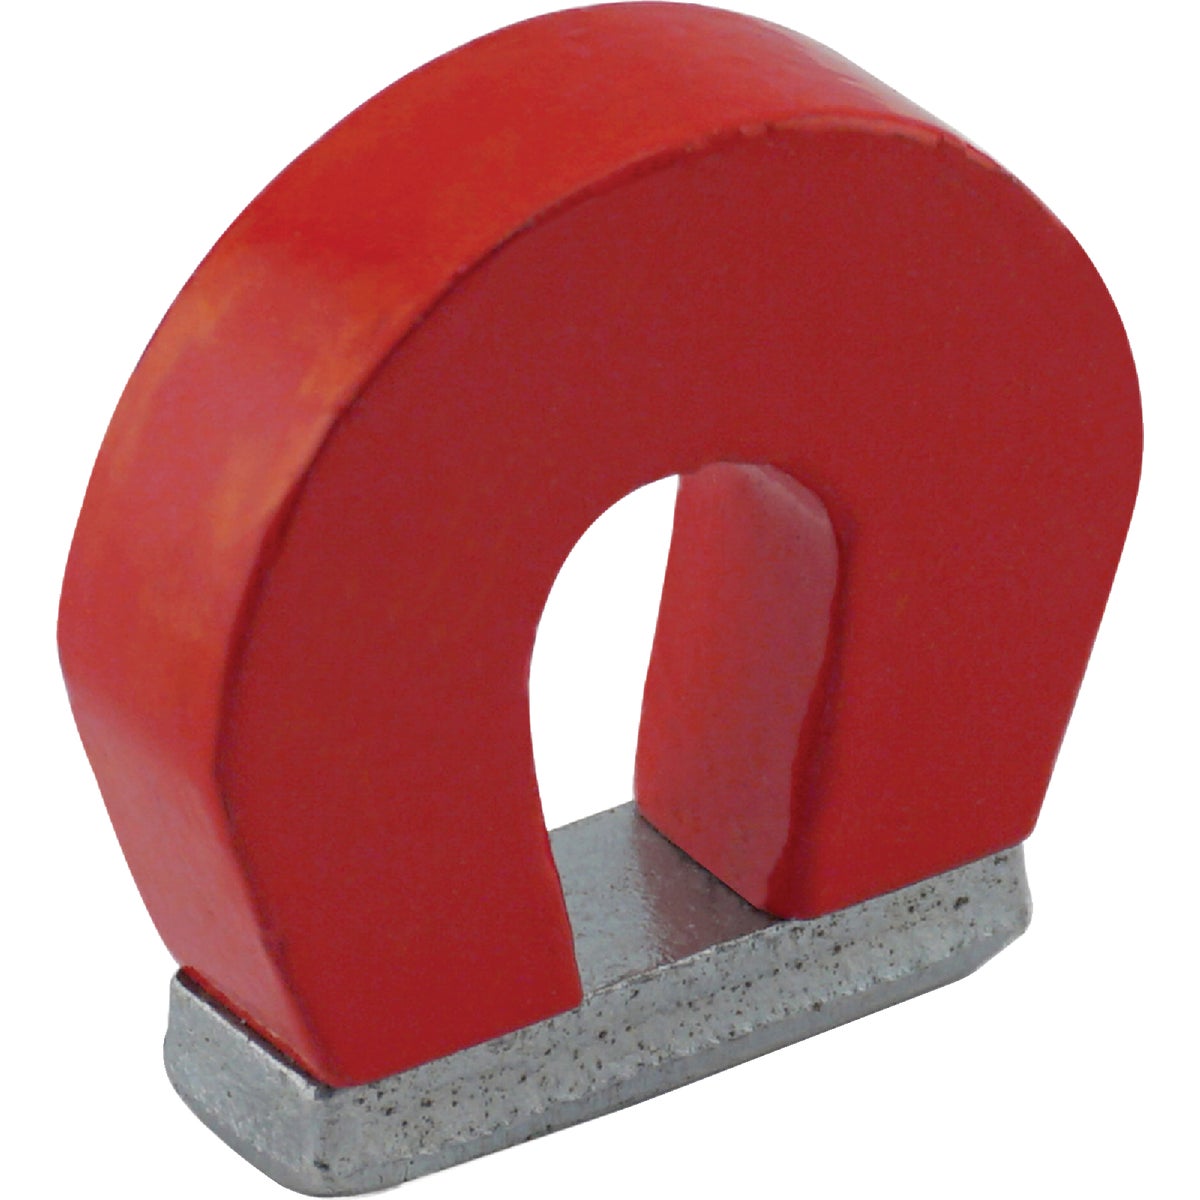 Horseshoe Magnet